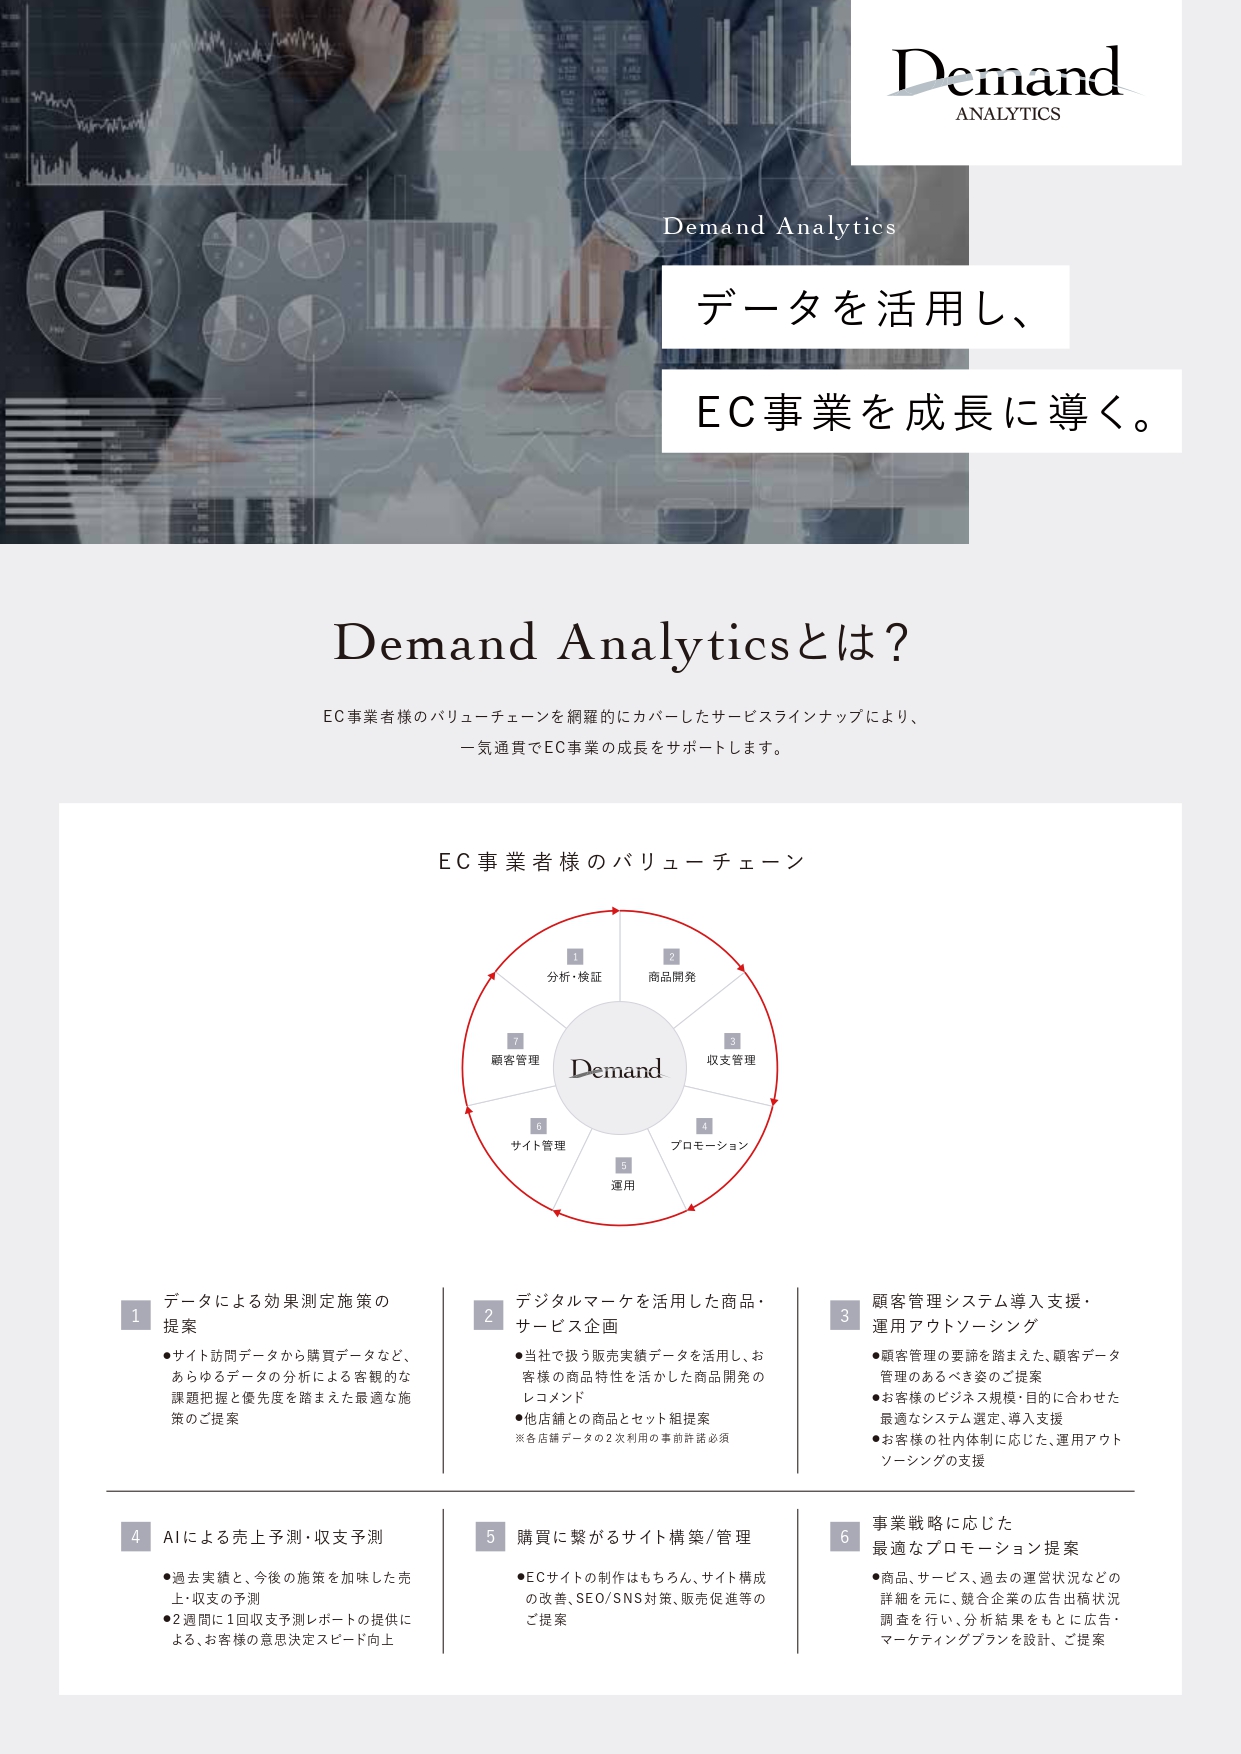 Demand Analytics